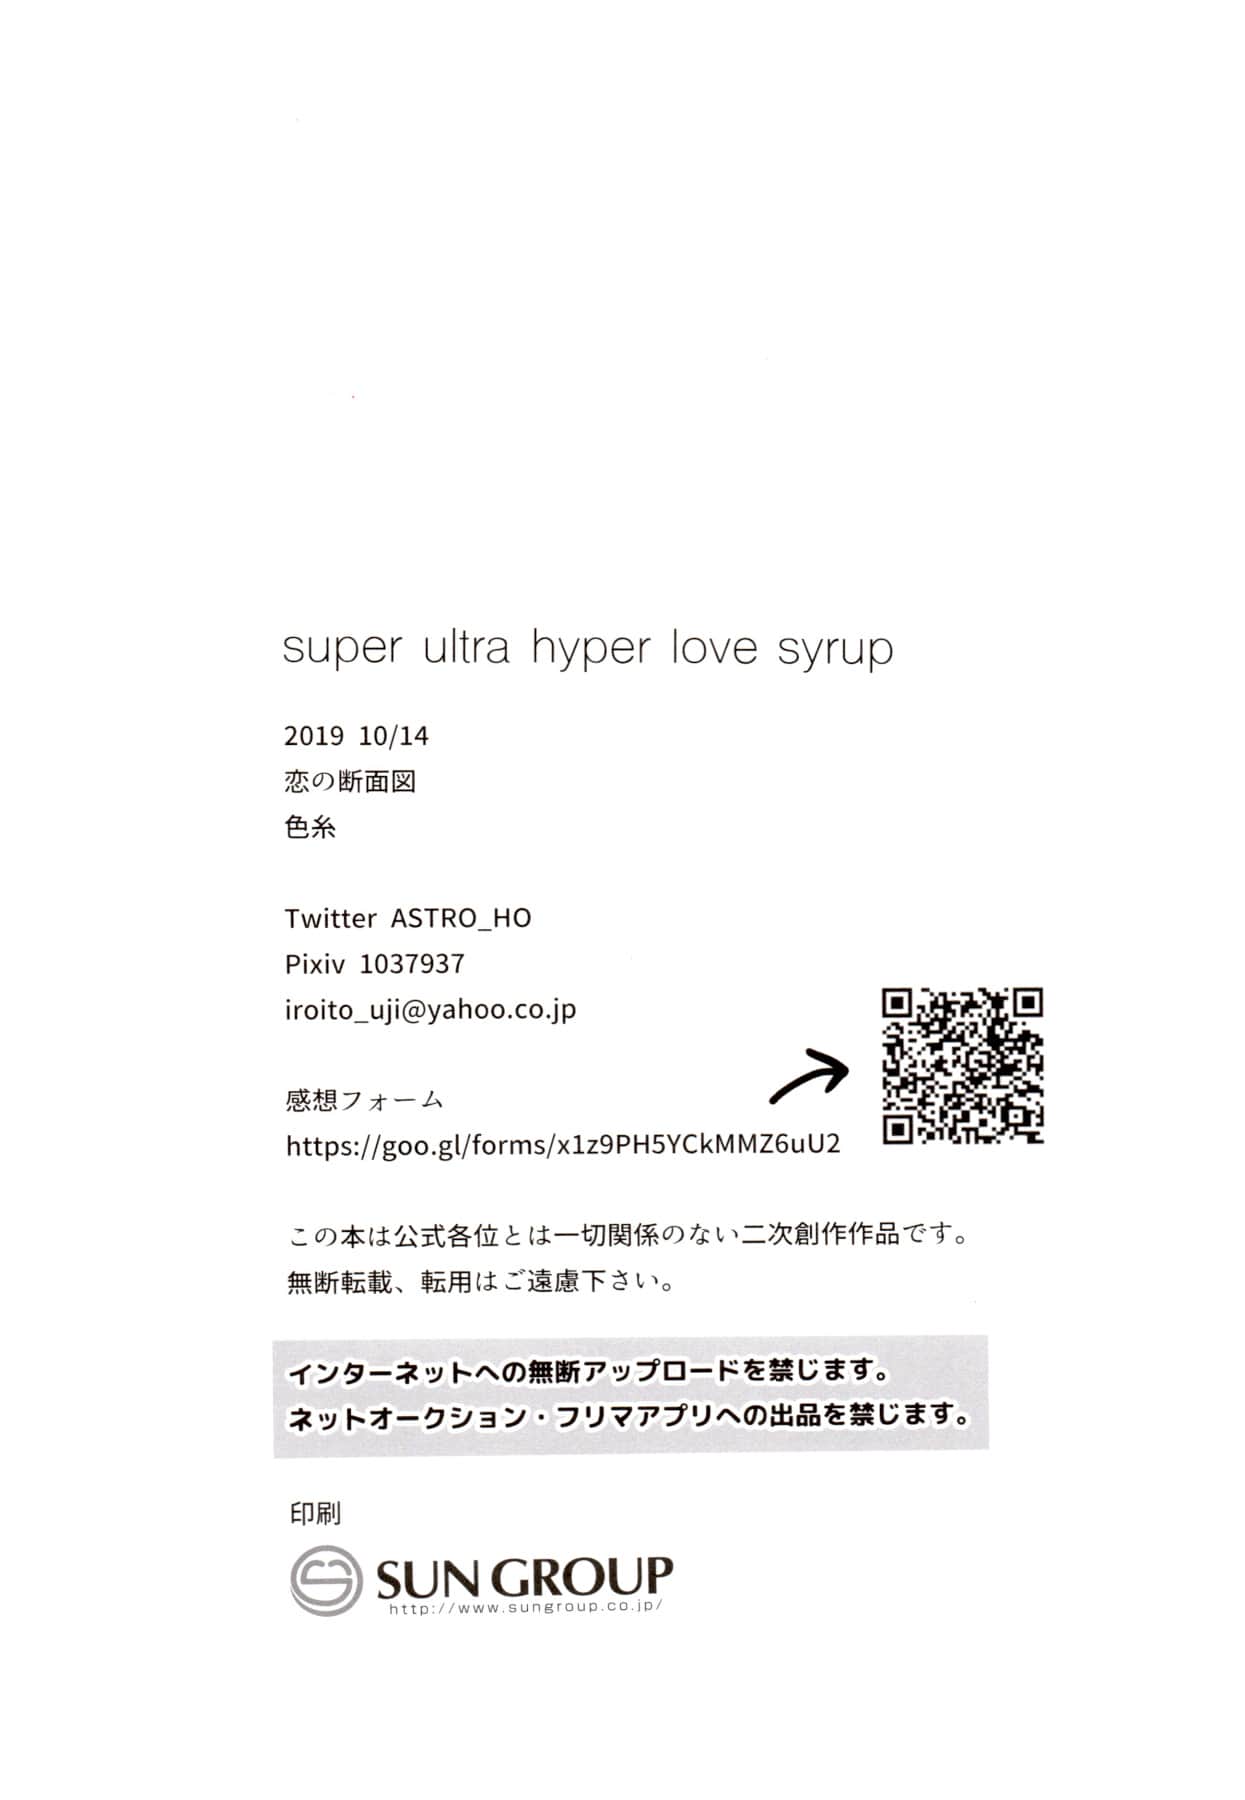 Super ultra hyper love syrup - Foto 27